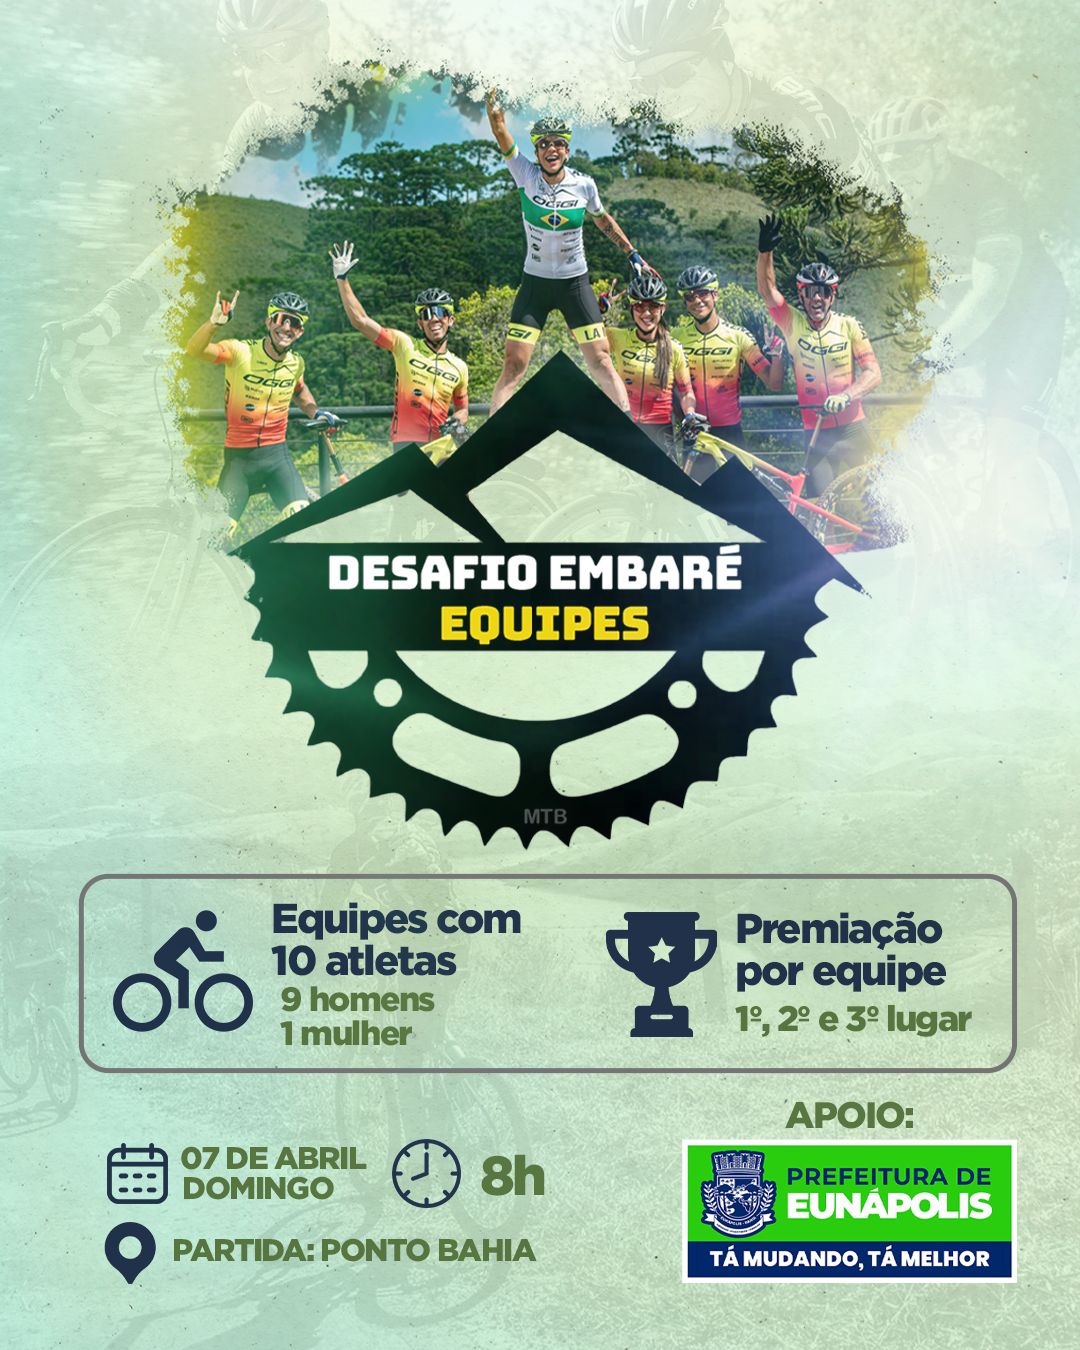 Em alusão ao Dia Mundial da Saúde, Prefeitura de Eunápolis apoia o Desafio Embaré de ciclismo que ocorre neste domingo 2